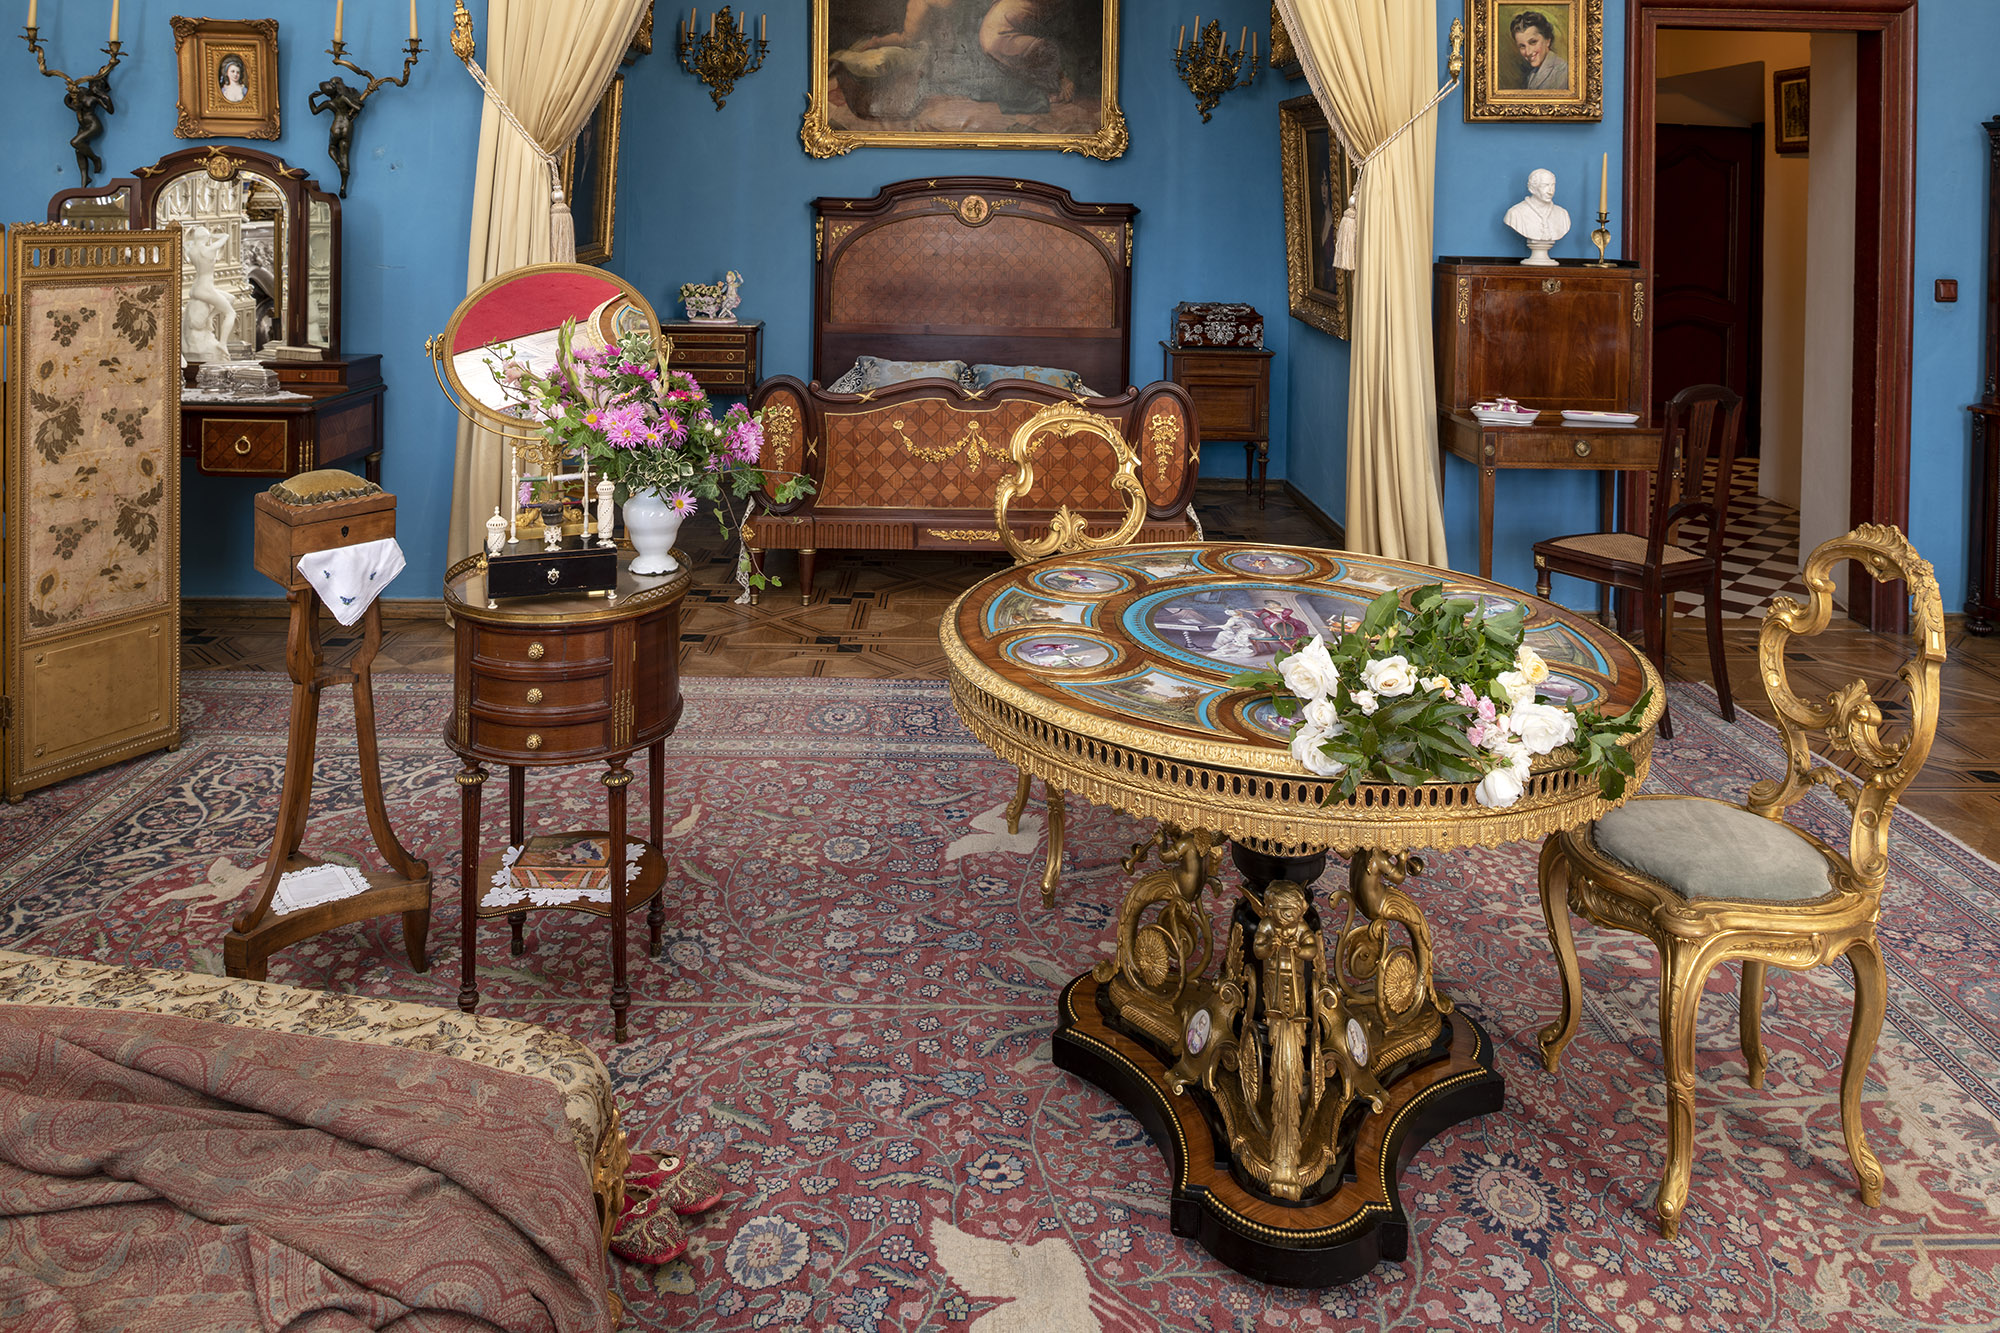 Współczesna kolorowa fotografia przedstawiająca wnętrze Sypialni Hrabiny, nazywanej od koloru ścian Salonem Błękitnym. W głębi widoczne jest ustawione we wnęce podwójne łoże dekorowane intarsją, nad łożem fragment obrazu oprawionego w złoconą ramę. Wejście do wnęki udekorowane jest kotarami, z jasnego połyskliwego materiału spiętego ozdobnymi sznurami zwieńczonymi dużymi chwostami. Po prawej stronie niewielkie wysokie damskie biurko, na nim białe popiersie papieża, powyżej portret z 1941 roku przedstawiający uśmiechniętą Jadwigę Zamoyską, ostatnią właścicielkę Kozłówki. Dalej w prawo otwarte drzwi, widoczna biało czarna mozaika na posadzce i kolejne drzwi. Po lewej stronie wnęki sypialnianej widoczny jest fragment toaletki z lustrem, z ciemnego mahoniu, nad nią kinkiet świecowy z pełnoplastyczną postacią kobiety. Na pierwszym planie fragment szezlongu, przy nim stolik i niciak. Na blacie stolika bukiet różowych kwiatów w jasnym wazonie i lustro, na półeczce poniżej szuflad kolorowe pudełko po słodyczach ułożone na białej serwetce. Po prawej stronie stół udekorowany złoconym brązem i porcelanowymi plakietami.